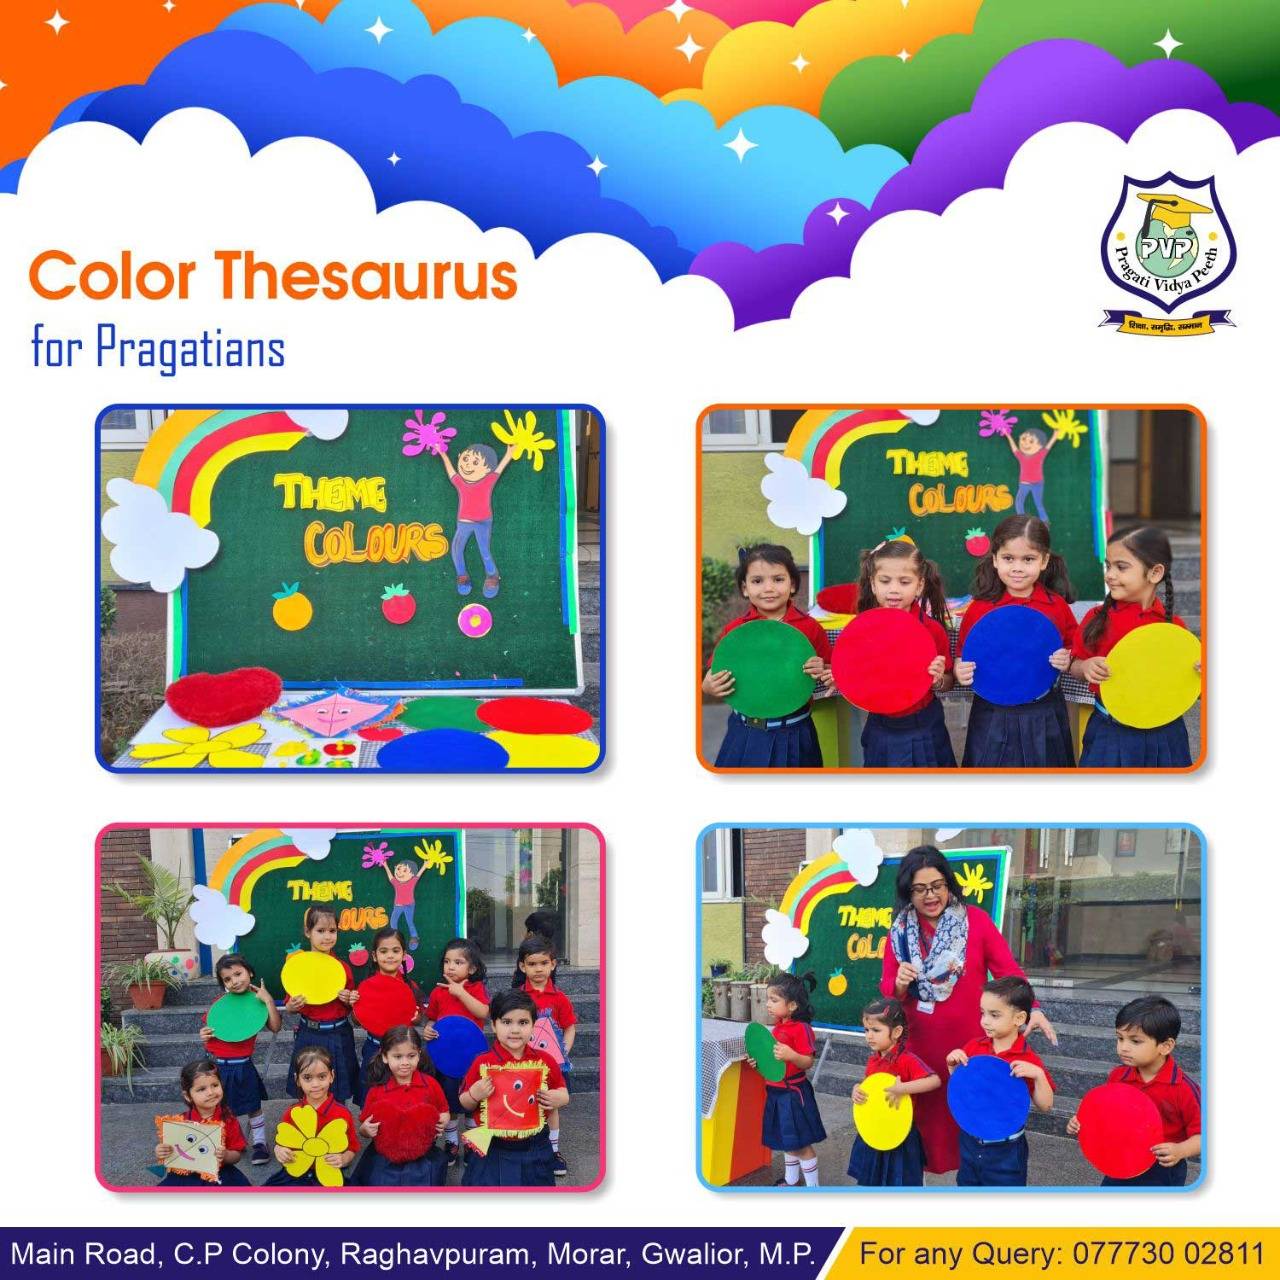 Color Thesaurus activity for little pragatians